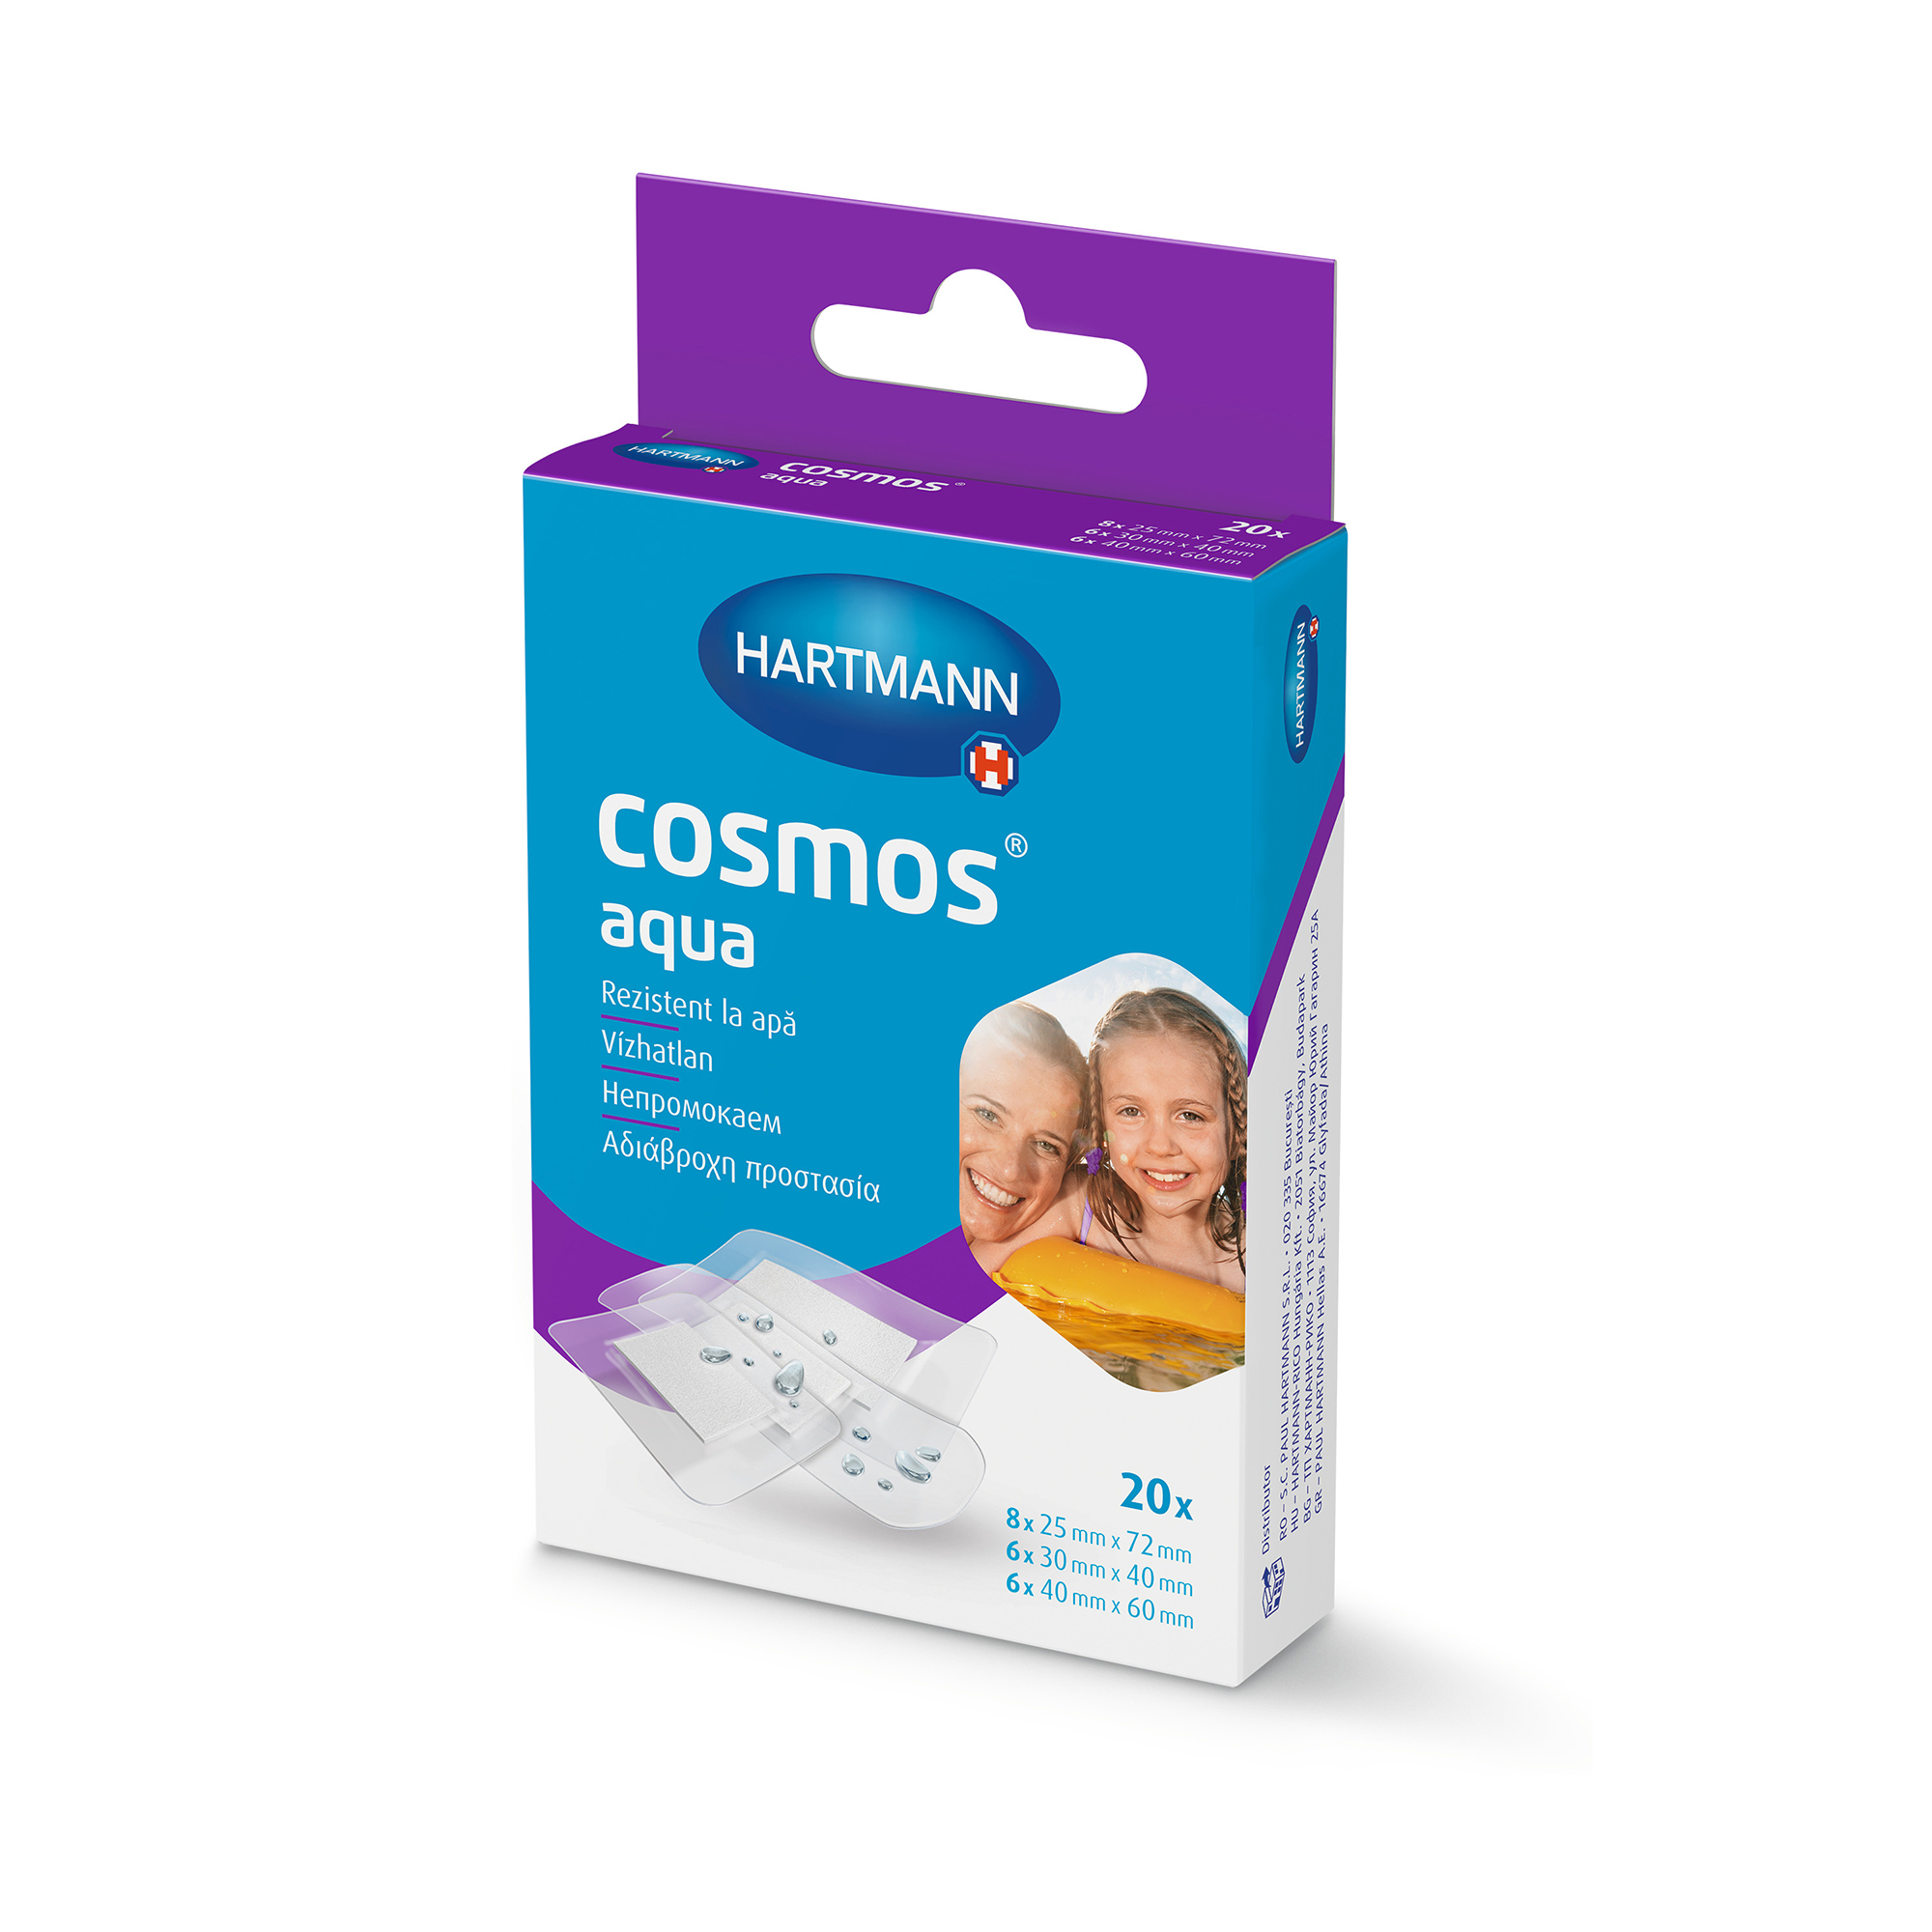 Hartmann Cosmos® aqua in 3 verschiedenen Größen, in einer Faltschachtel